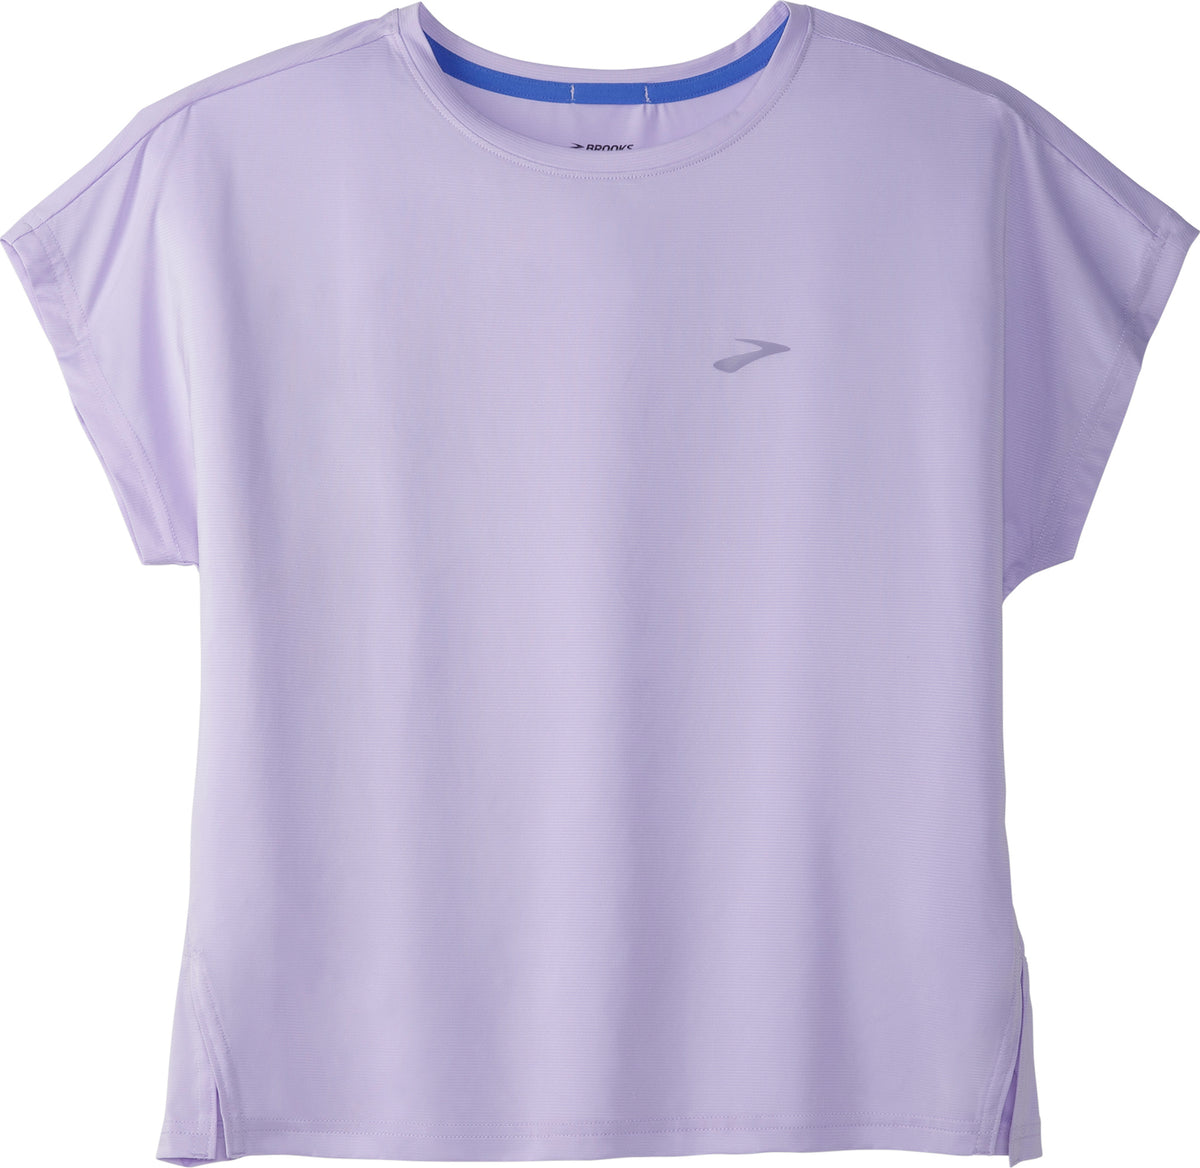 Brooks Sprint Free Short Sleeve Running T-Shirt - Women's